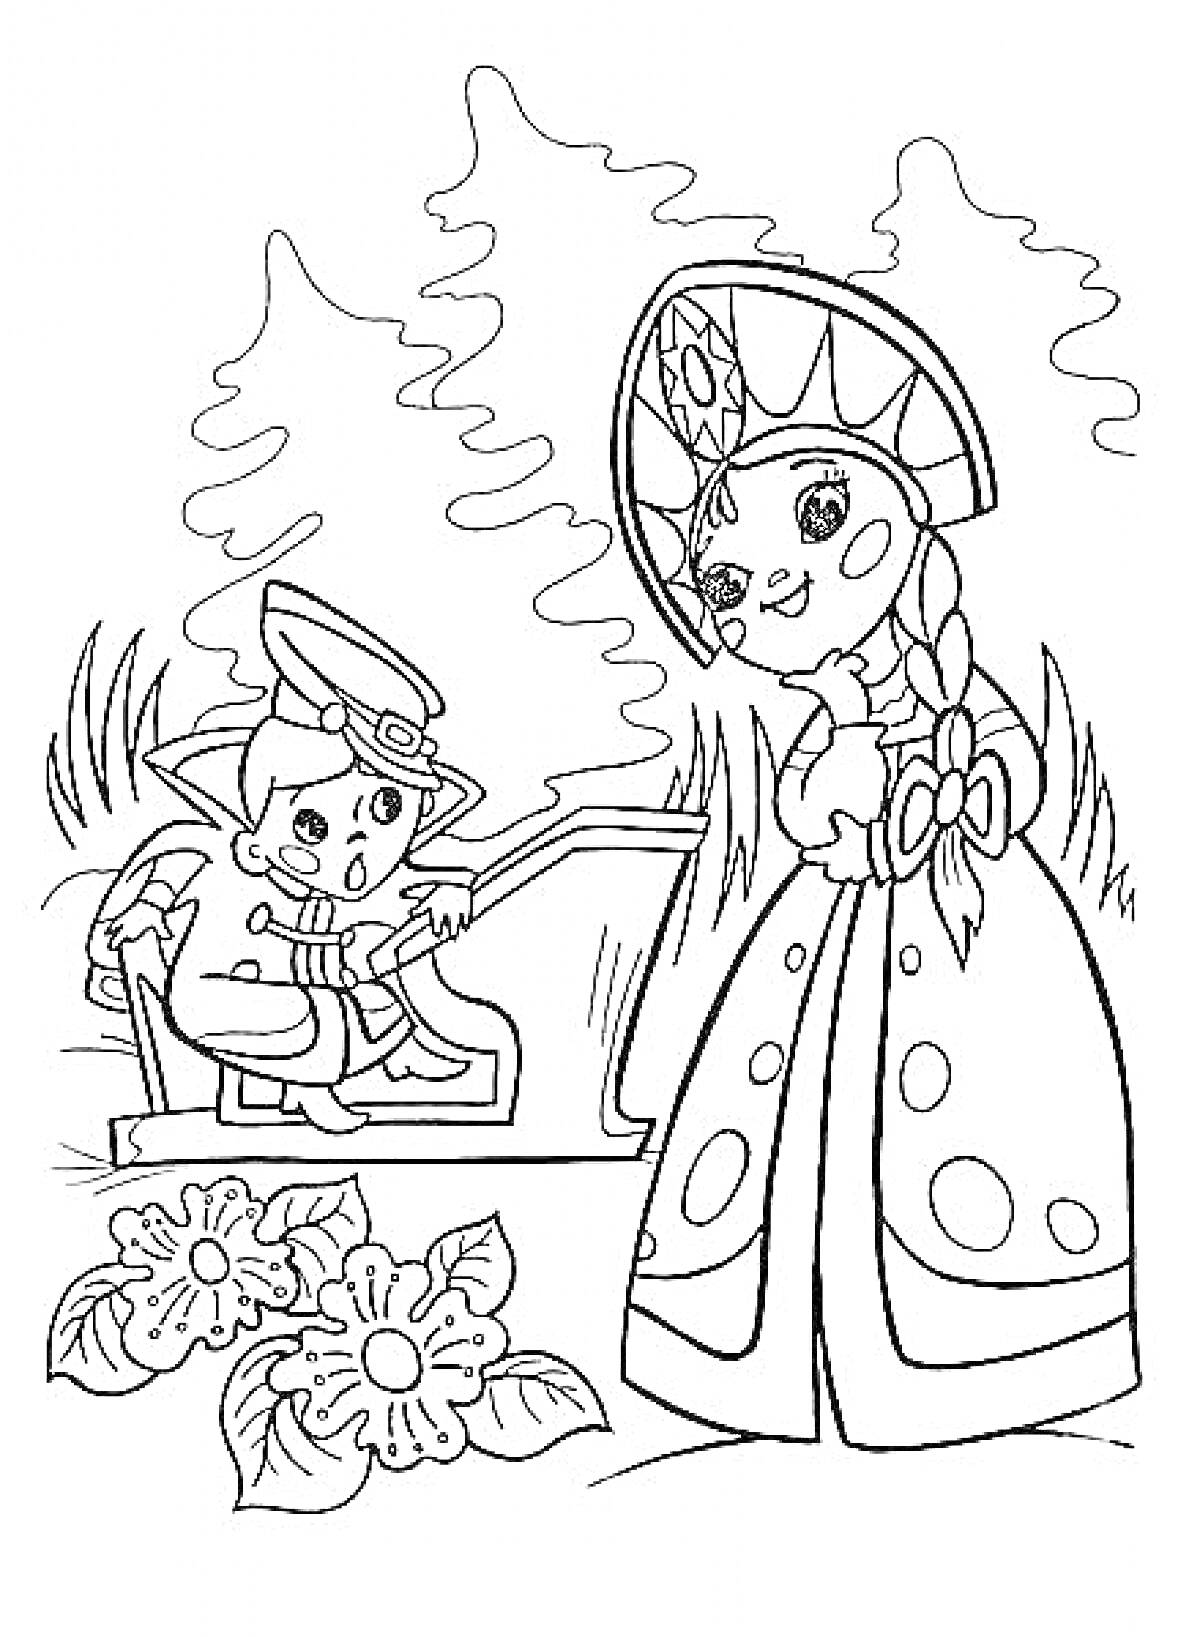 Раскраска Вовка на лавочке и девушка в кокошнике с цветами на переднем плане